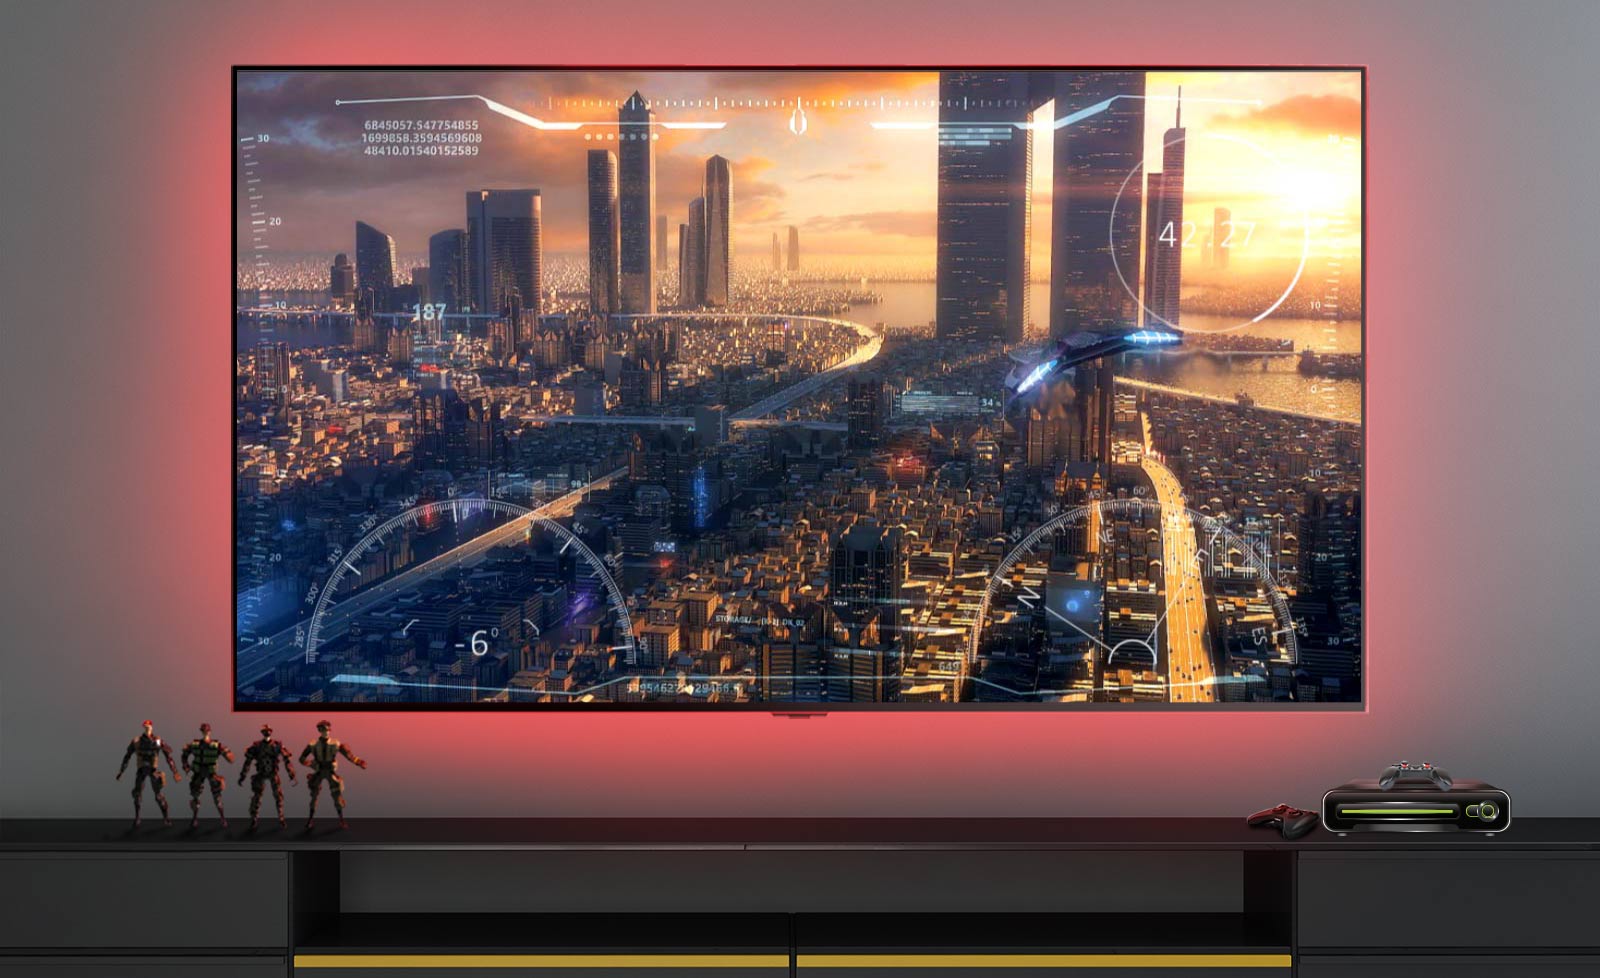 Scéna z videohry zobrazující vesmírnou loď přelétající nad městem zobrazená na televizní obrazovce (přehrát video).